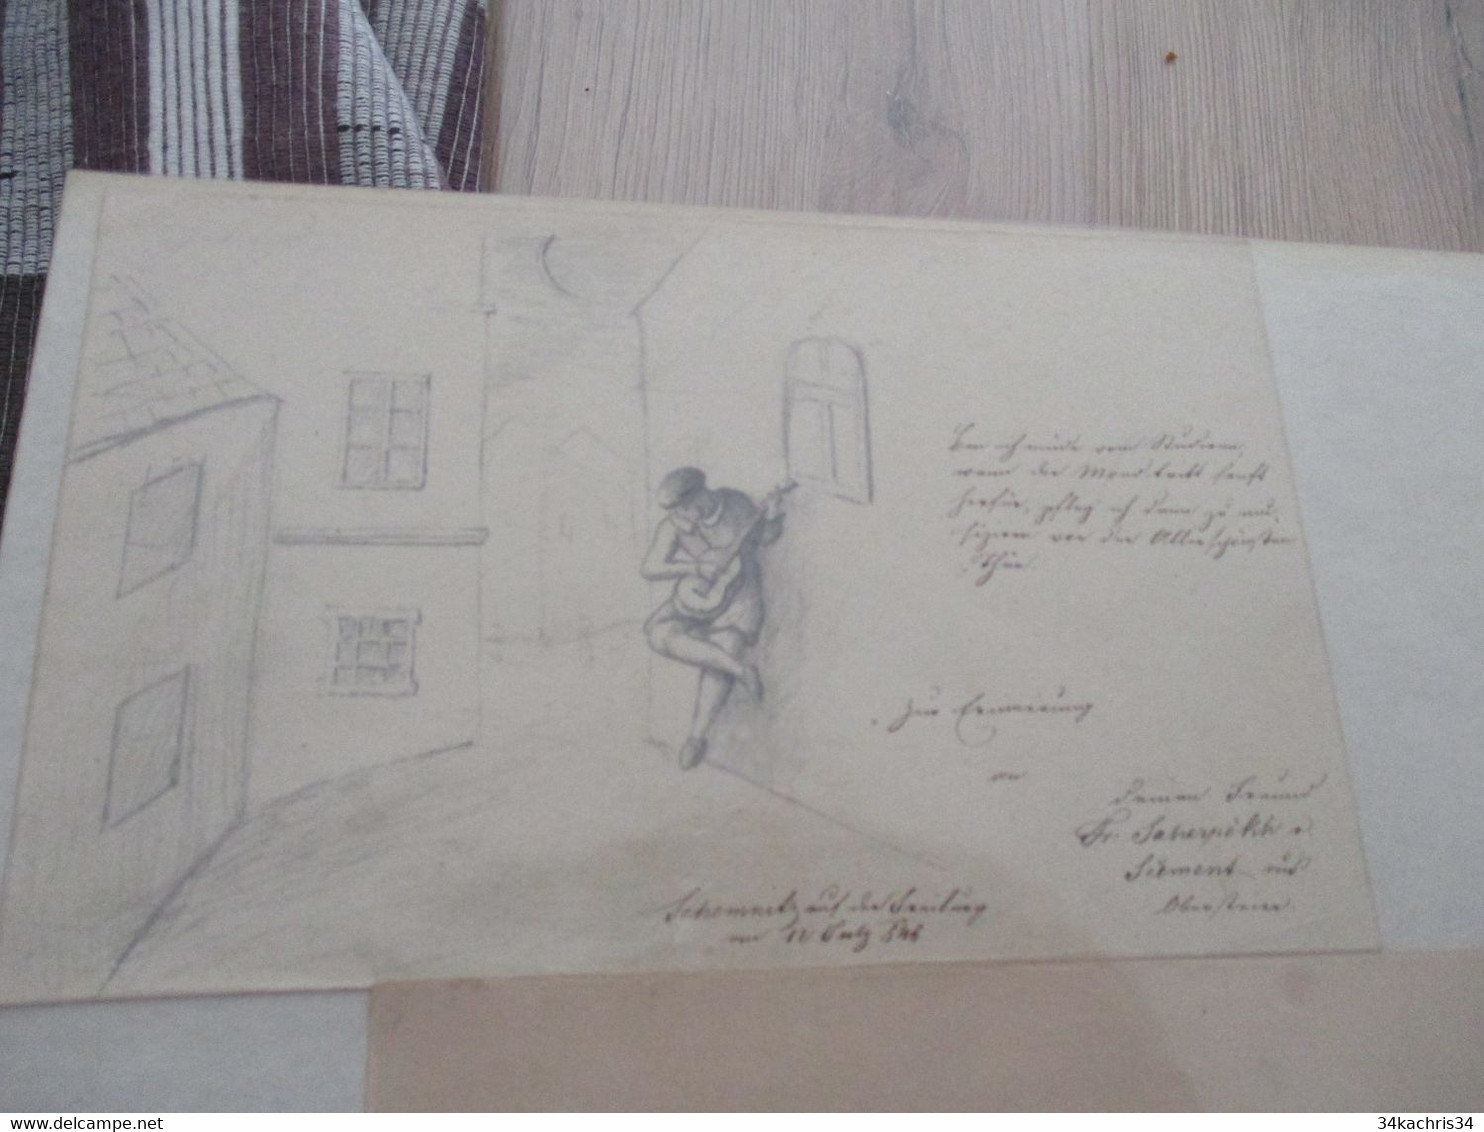 Autriche Ostria Slazburg Salsbourg accumulation de famille  + de documents 140 manuscrits dessins originaux autographes